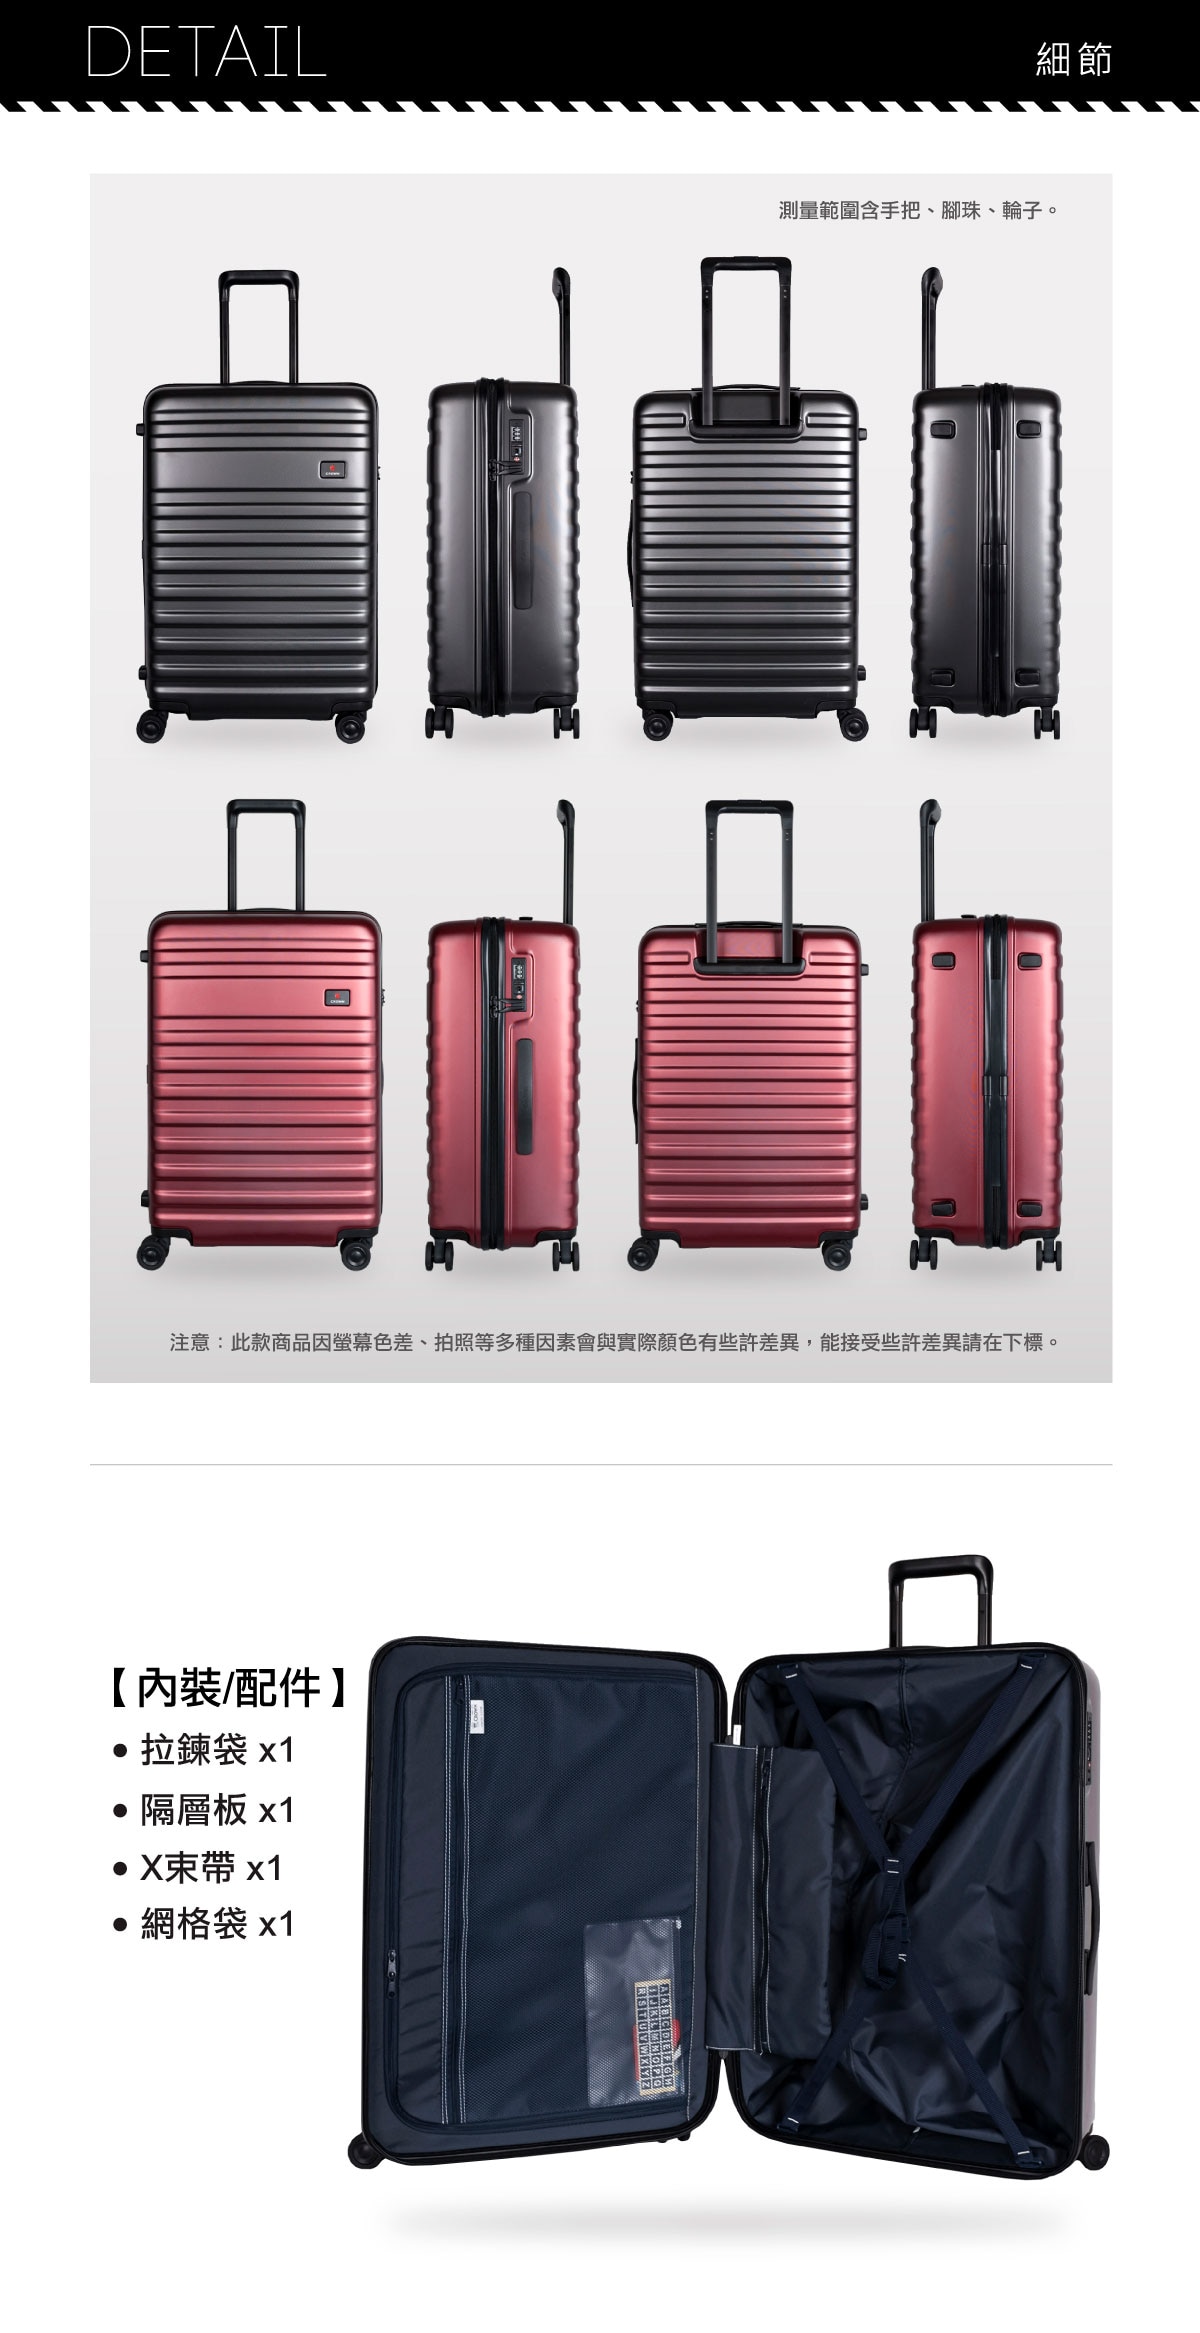 CROWN行李箱,內裝配件含:拉鍊帶*1、隔層板*1、X束帶*1、網格帶*1.